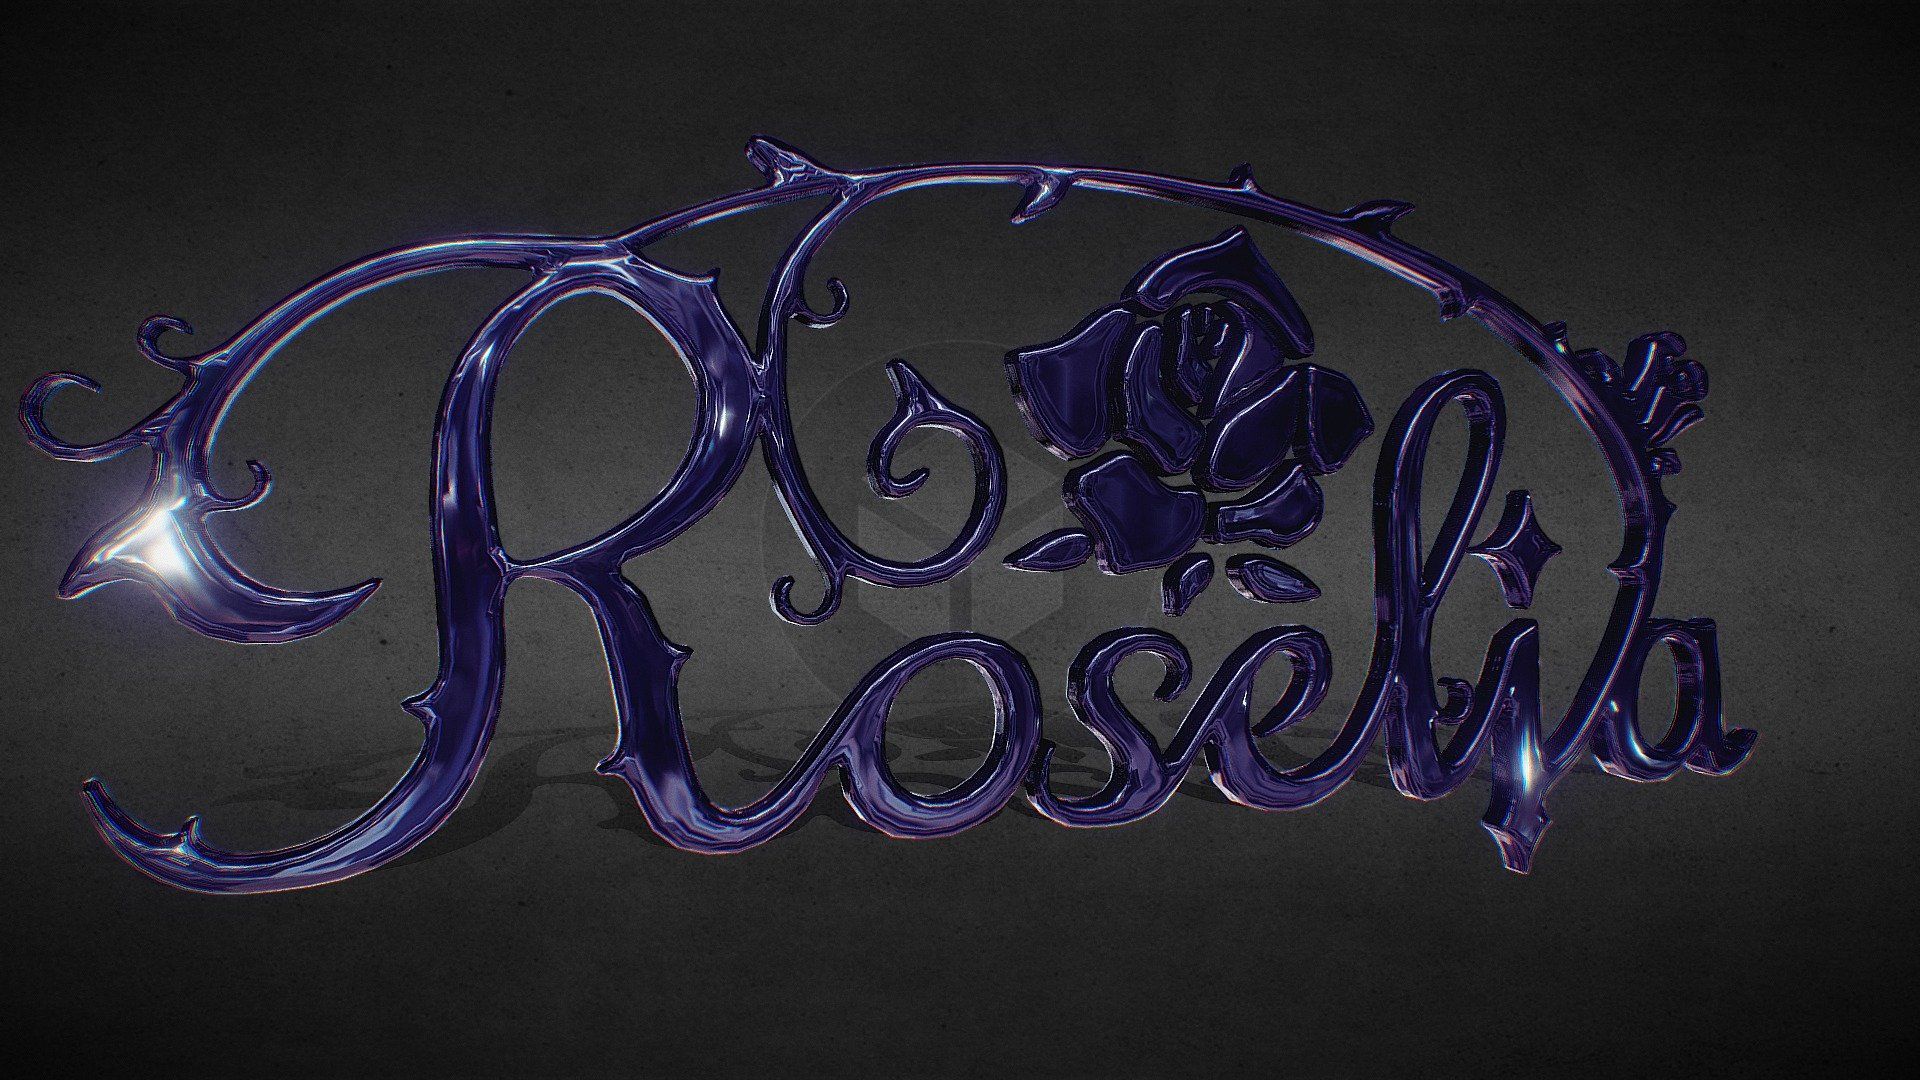 Roselia Fan Art Logo model